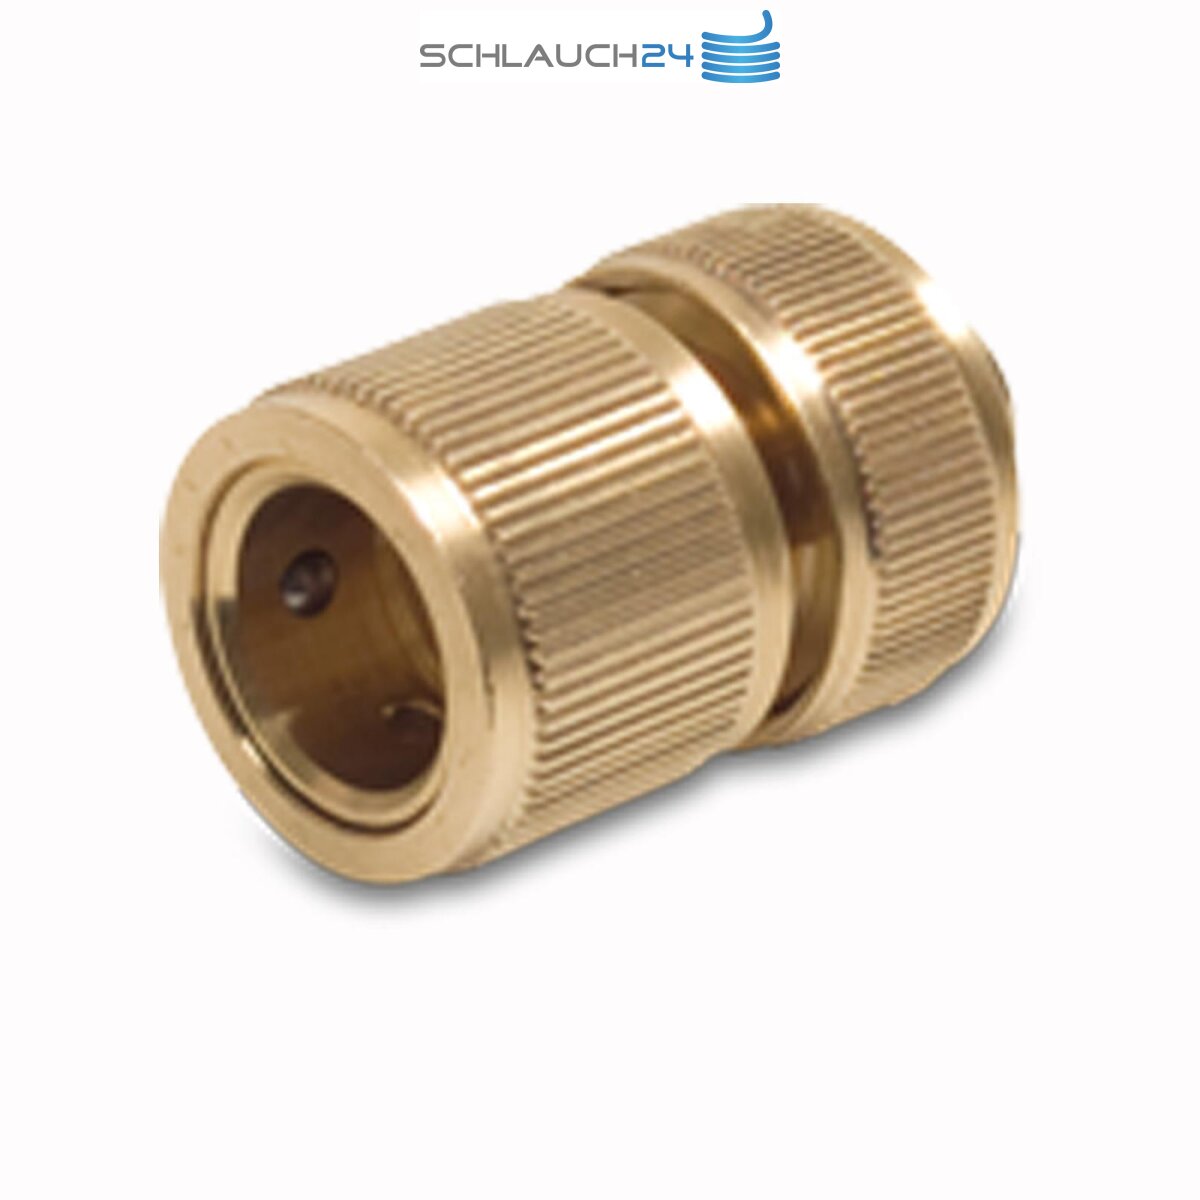 Druckluft-Schnellkupplung mit 8 mm Schlauchanschluss, 2,98 €